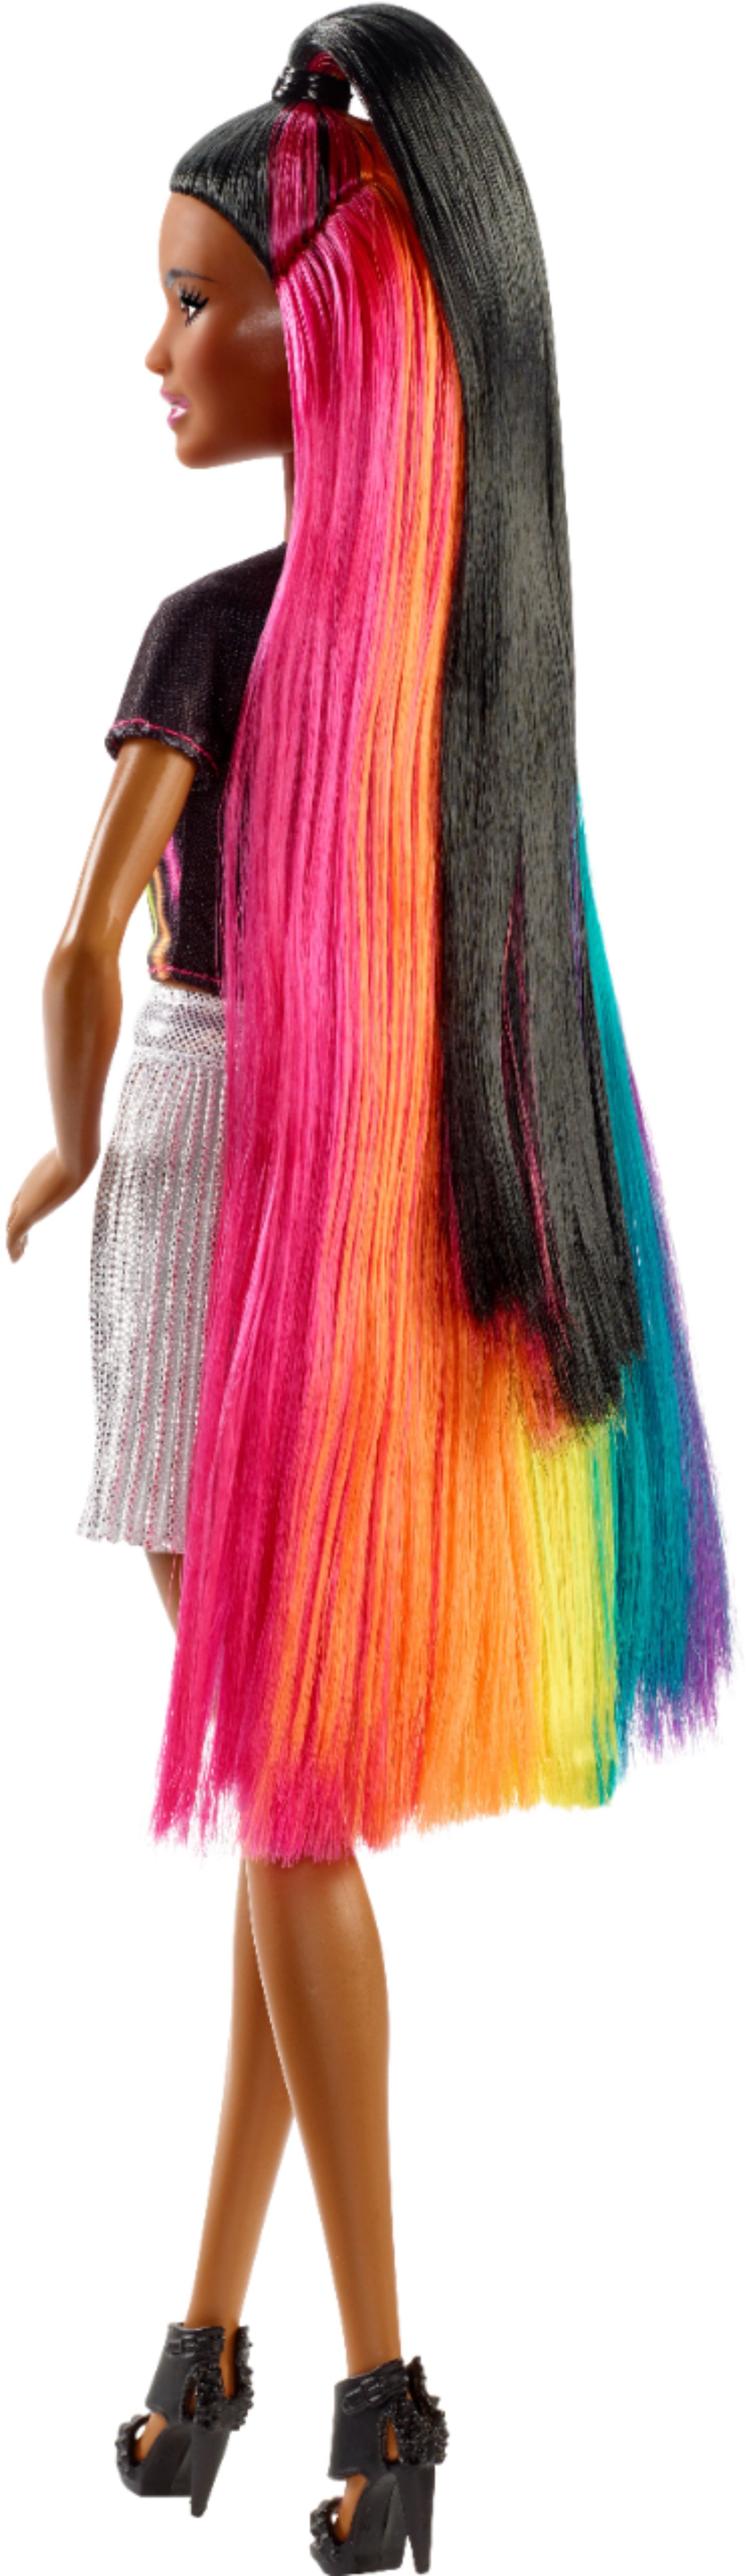 Best Buy Barbie Rainbow Sparkle Hair Doll Fxn95 